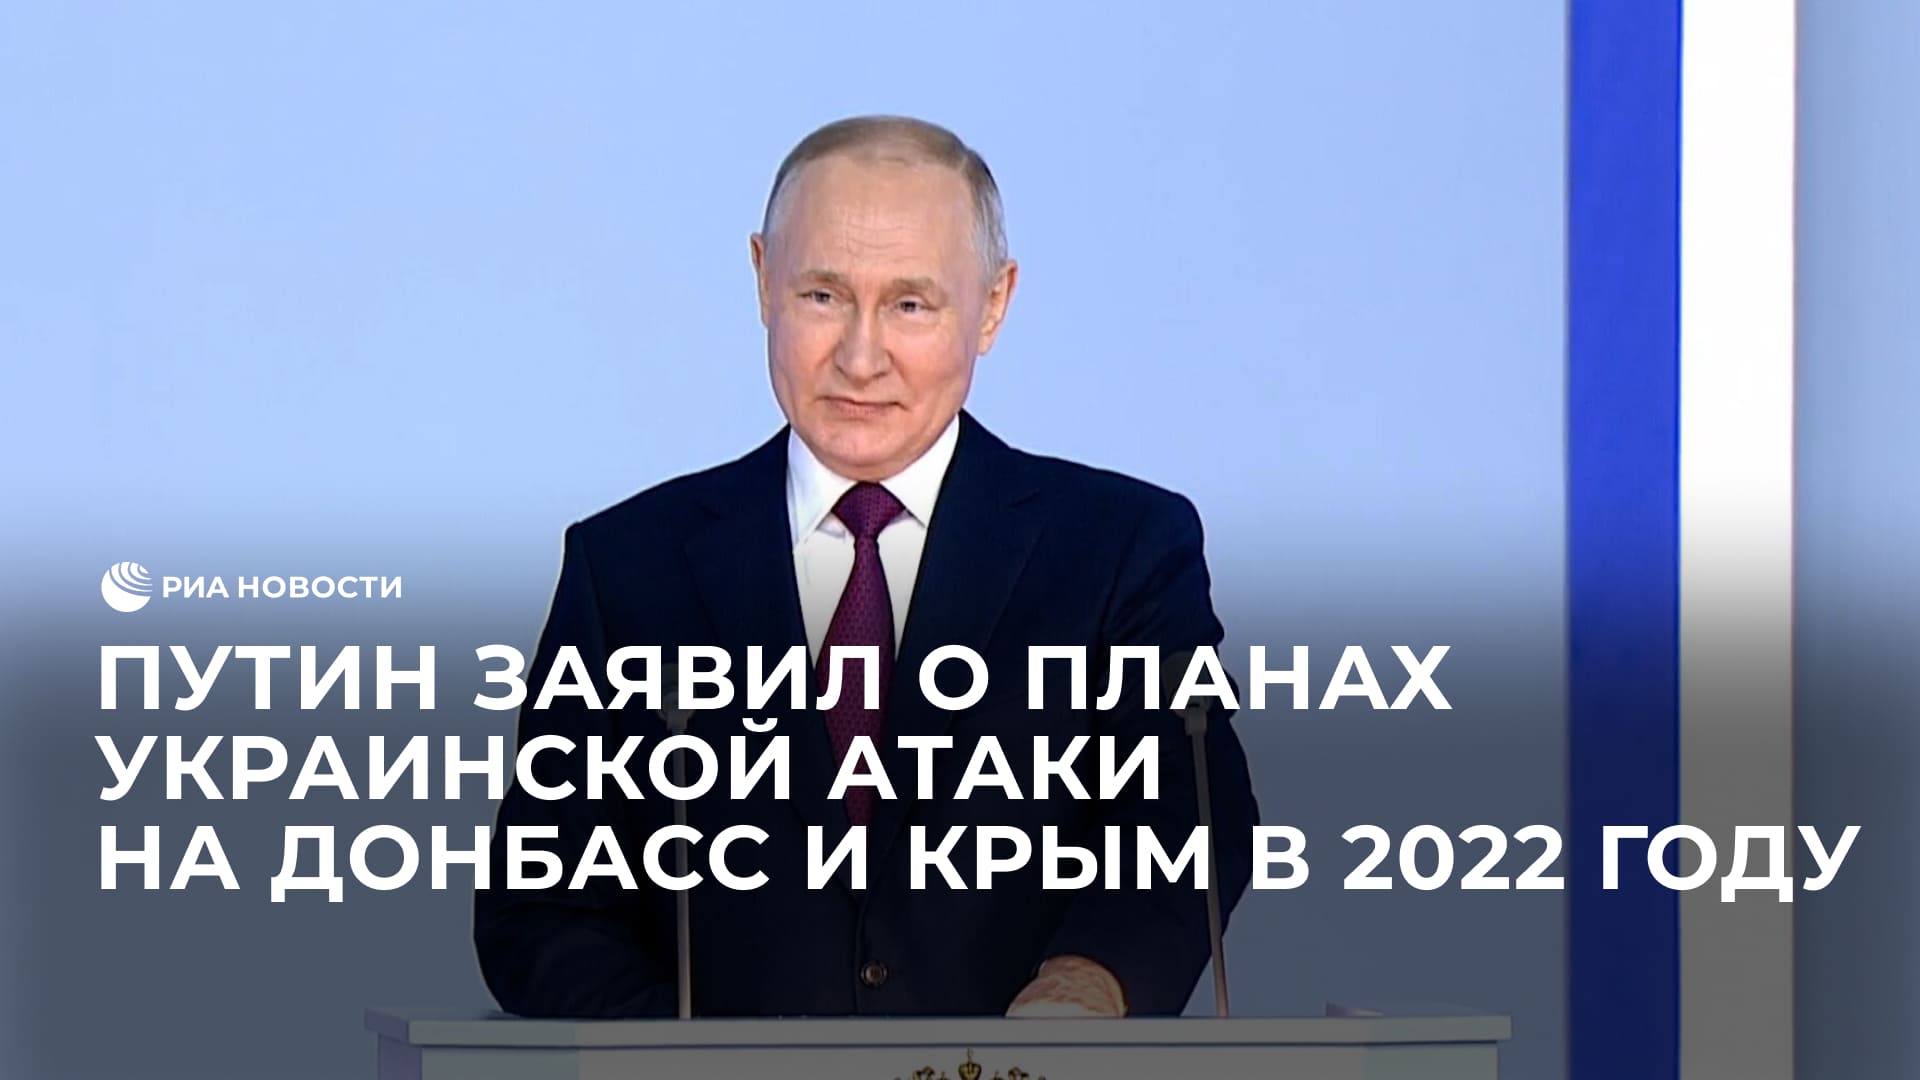 Путин заявил о планах украинской атаки на Донбасс и Крым в 2022 году